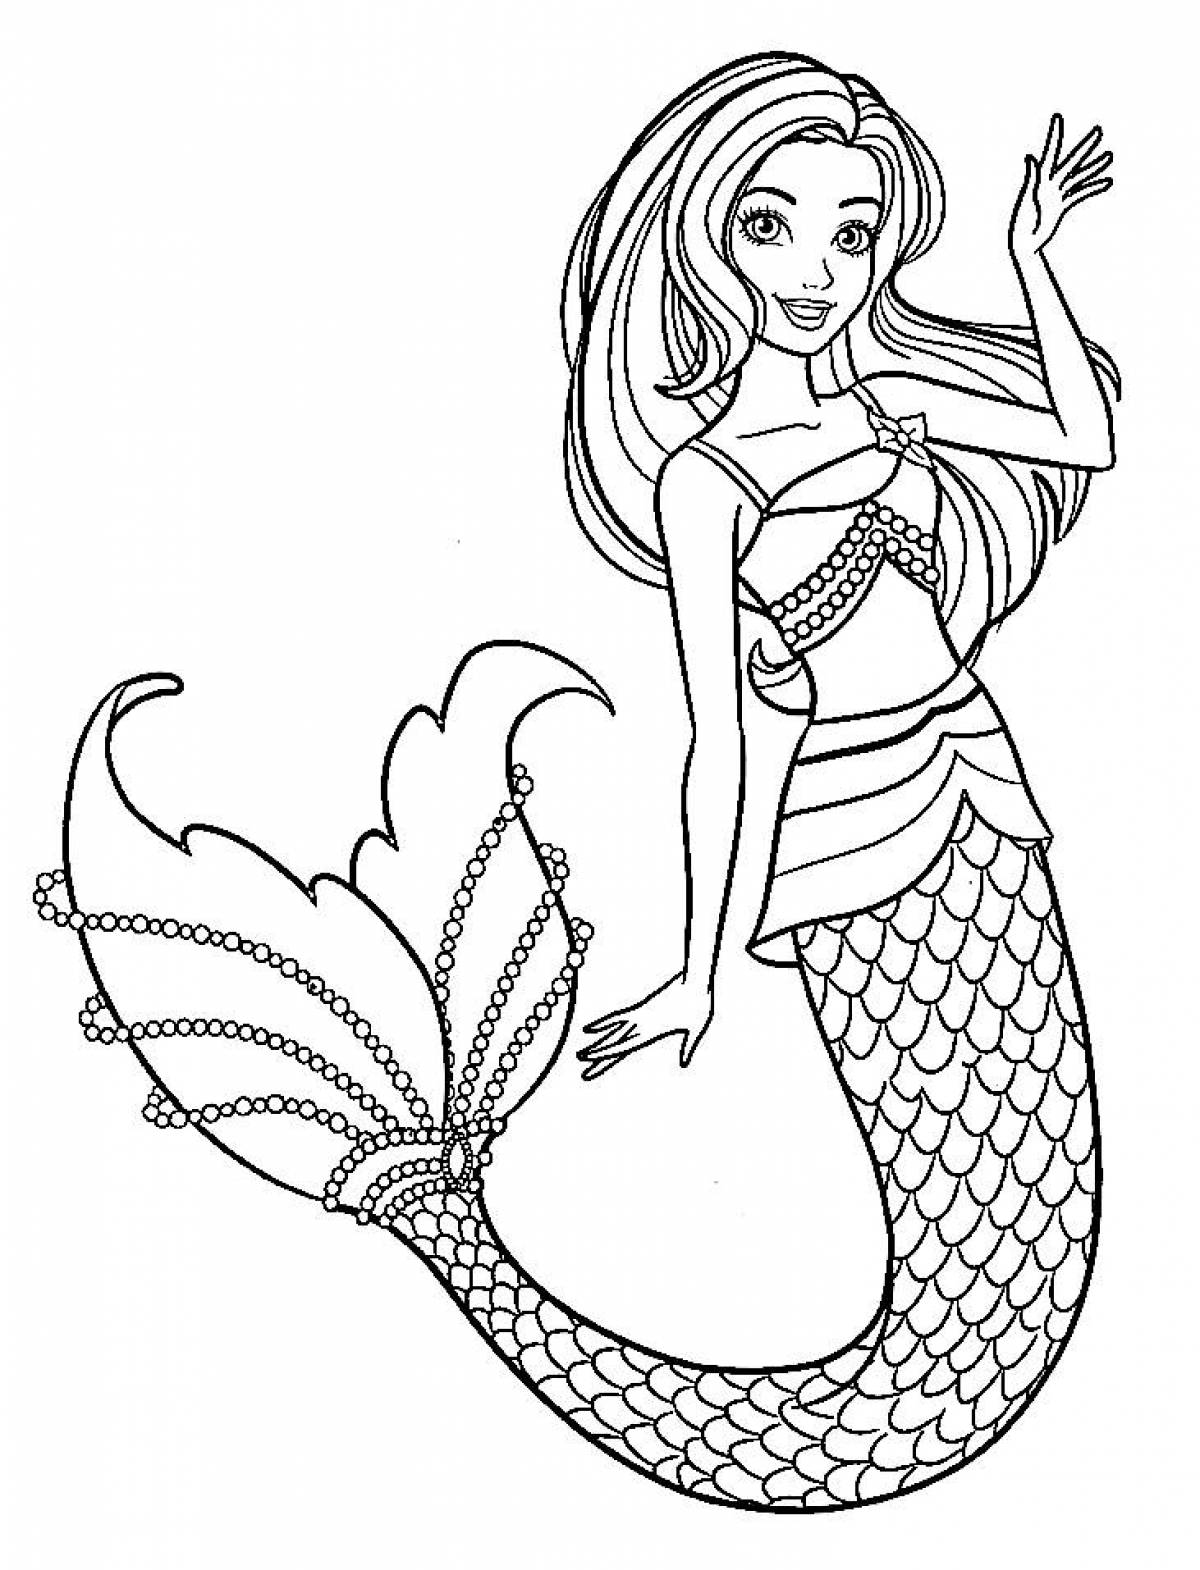 Fascinating mermaid coloring book for kids